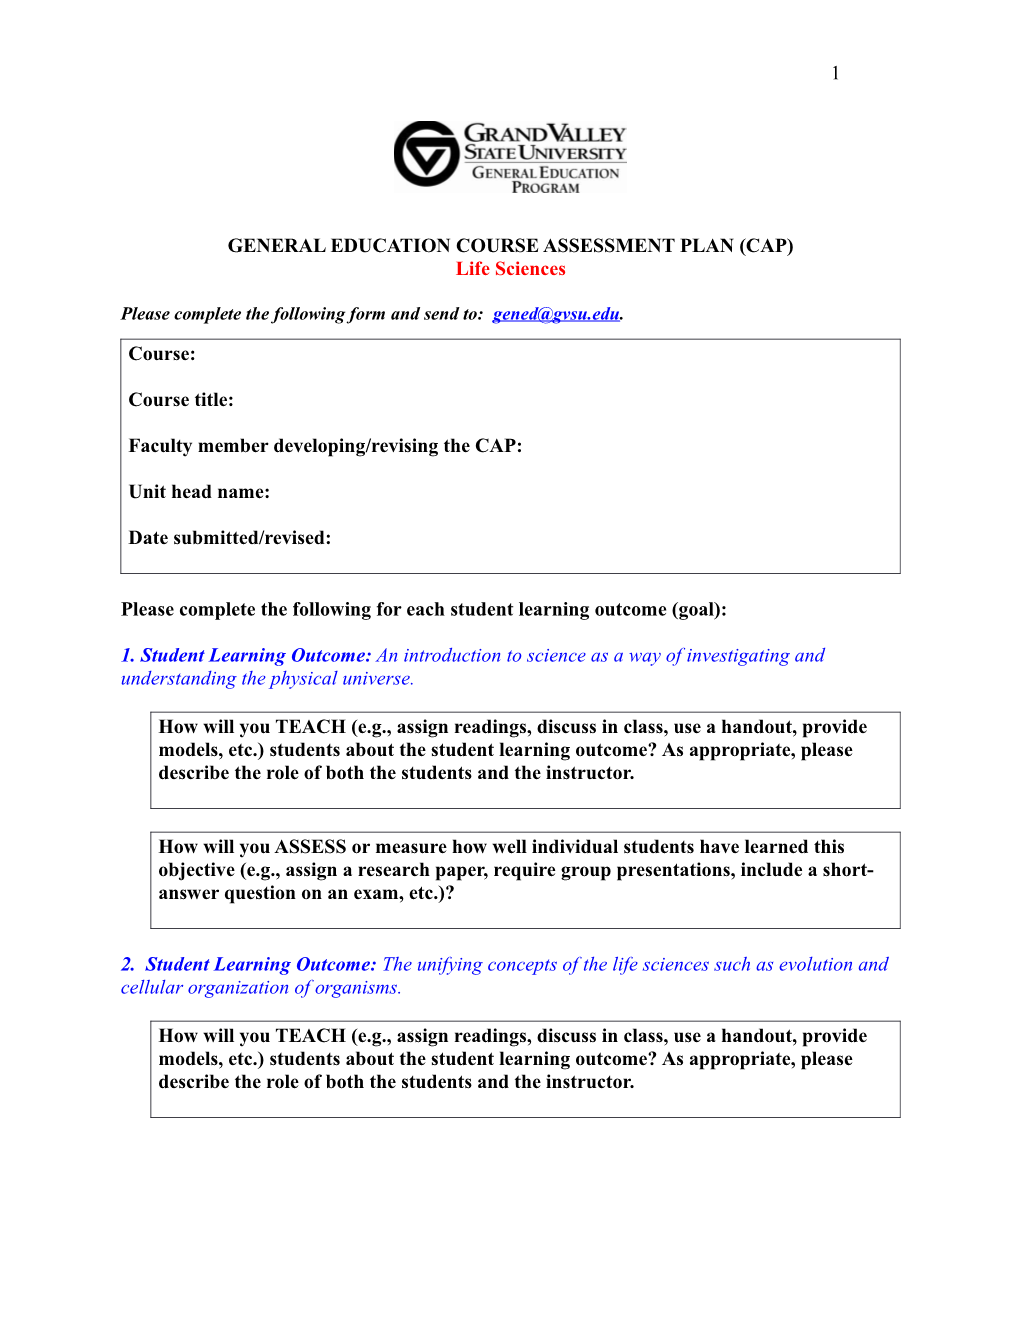 General Education Course Assessment Plan (Cap)